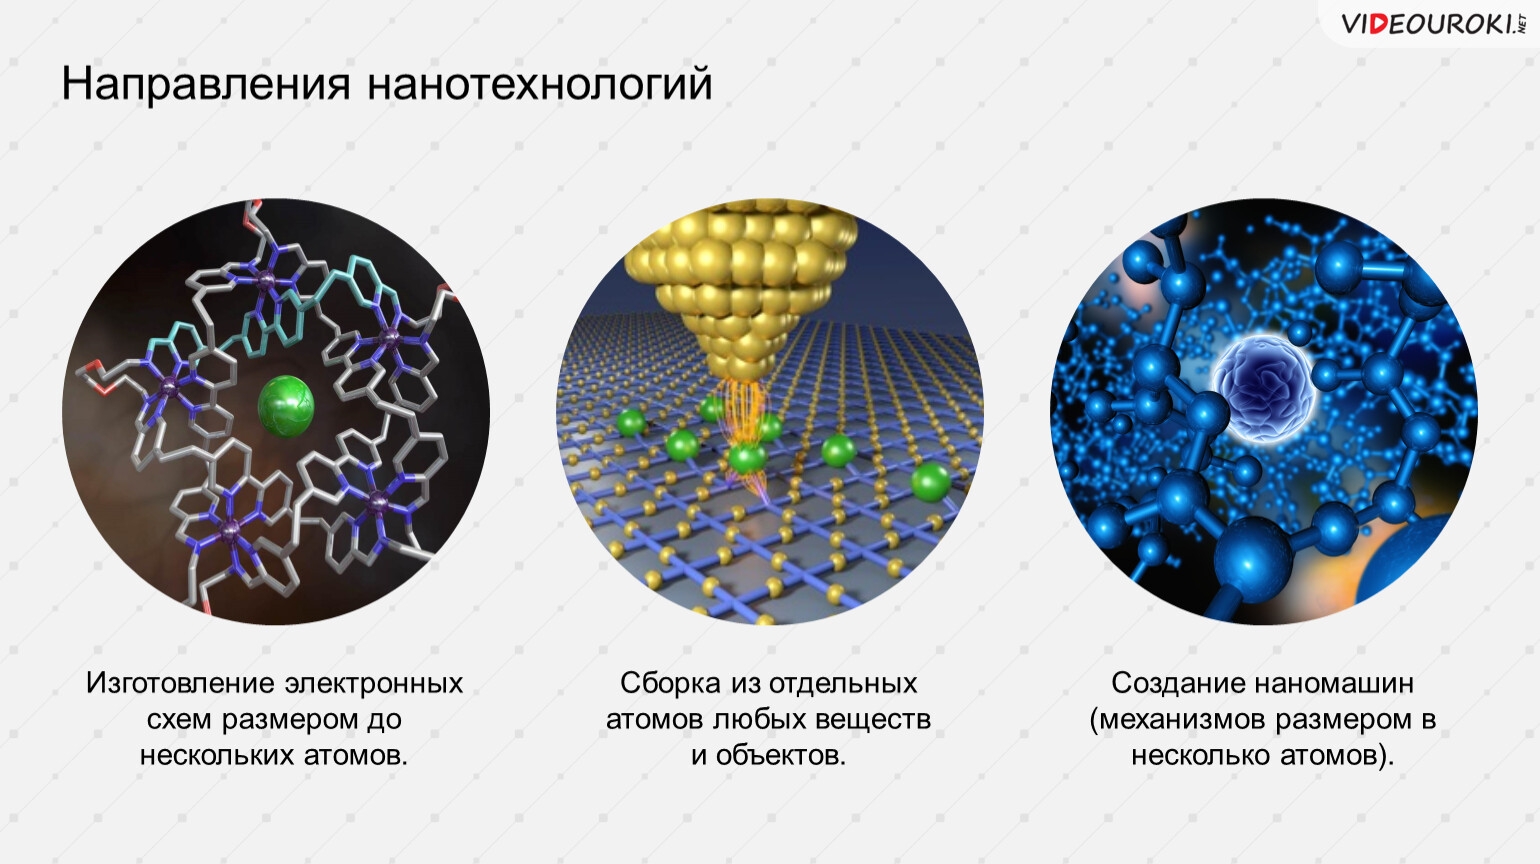 Направления нанотехнологий. Нанотехнологии схема. Нанотехнологии презентация. Основные направления нанотехнологии.